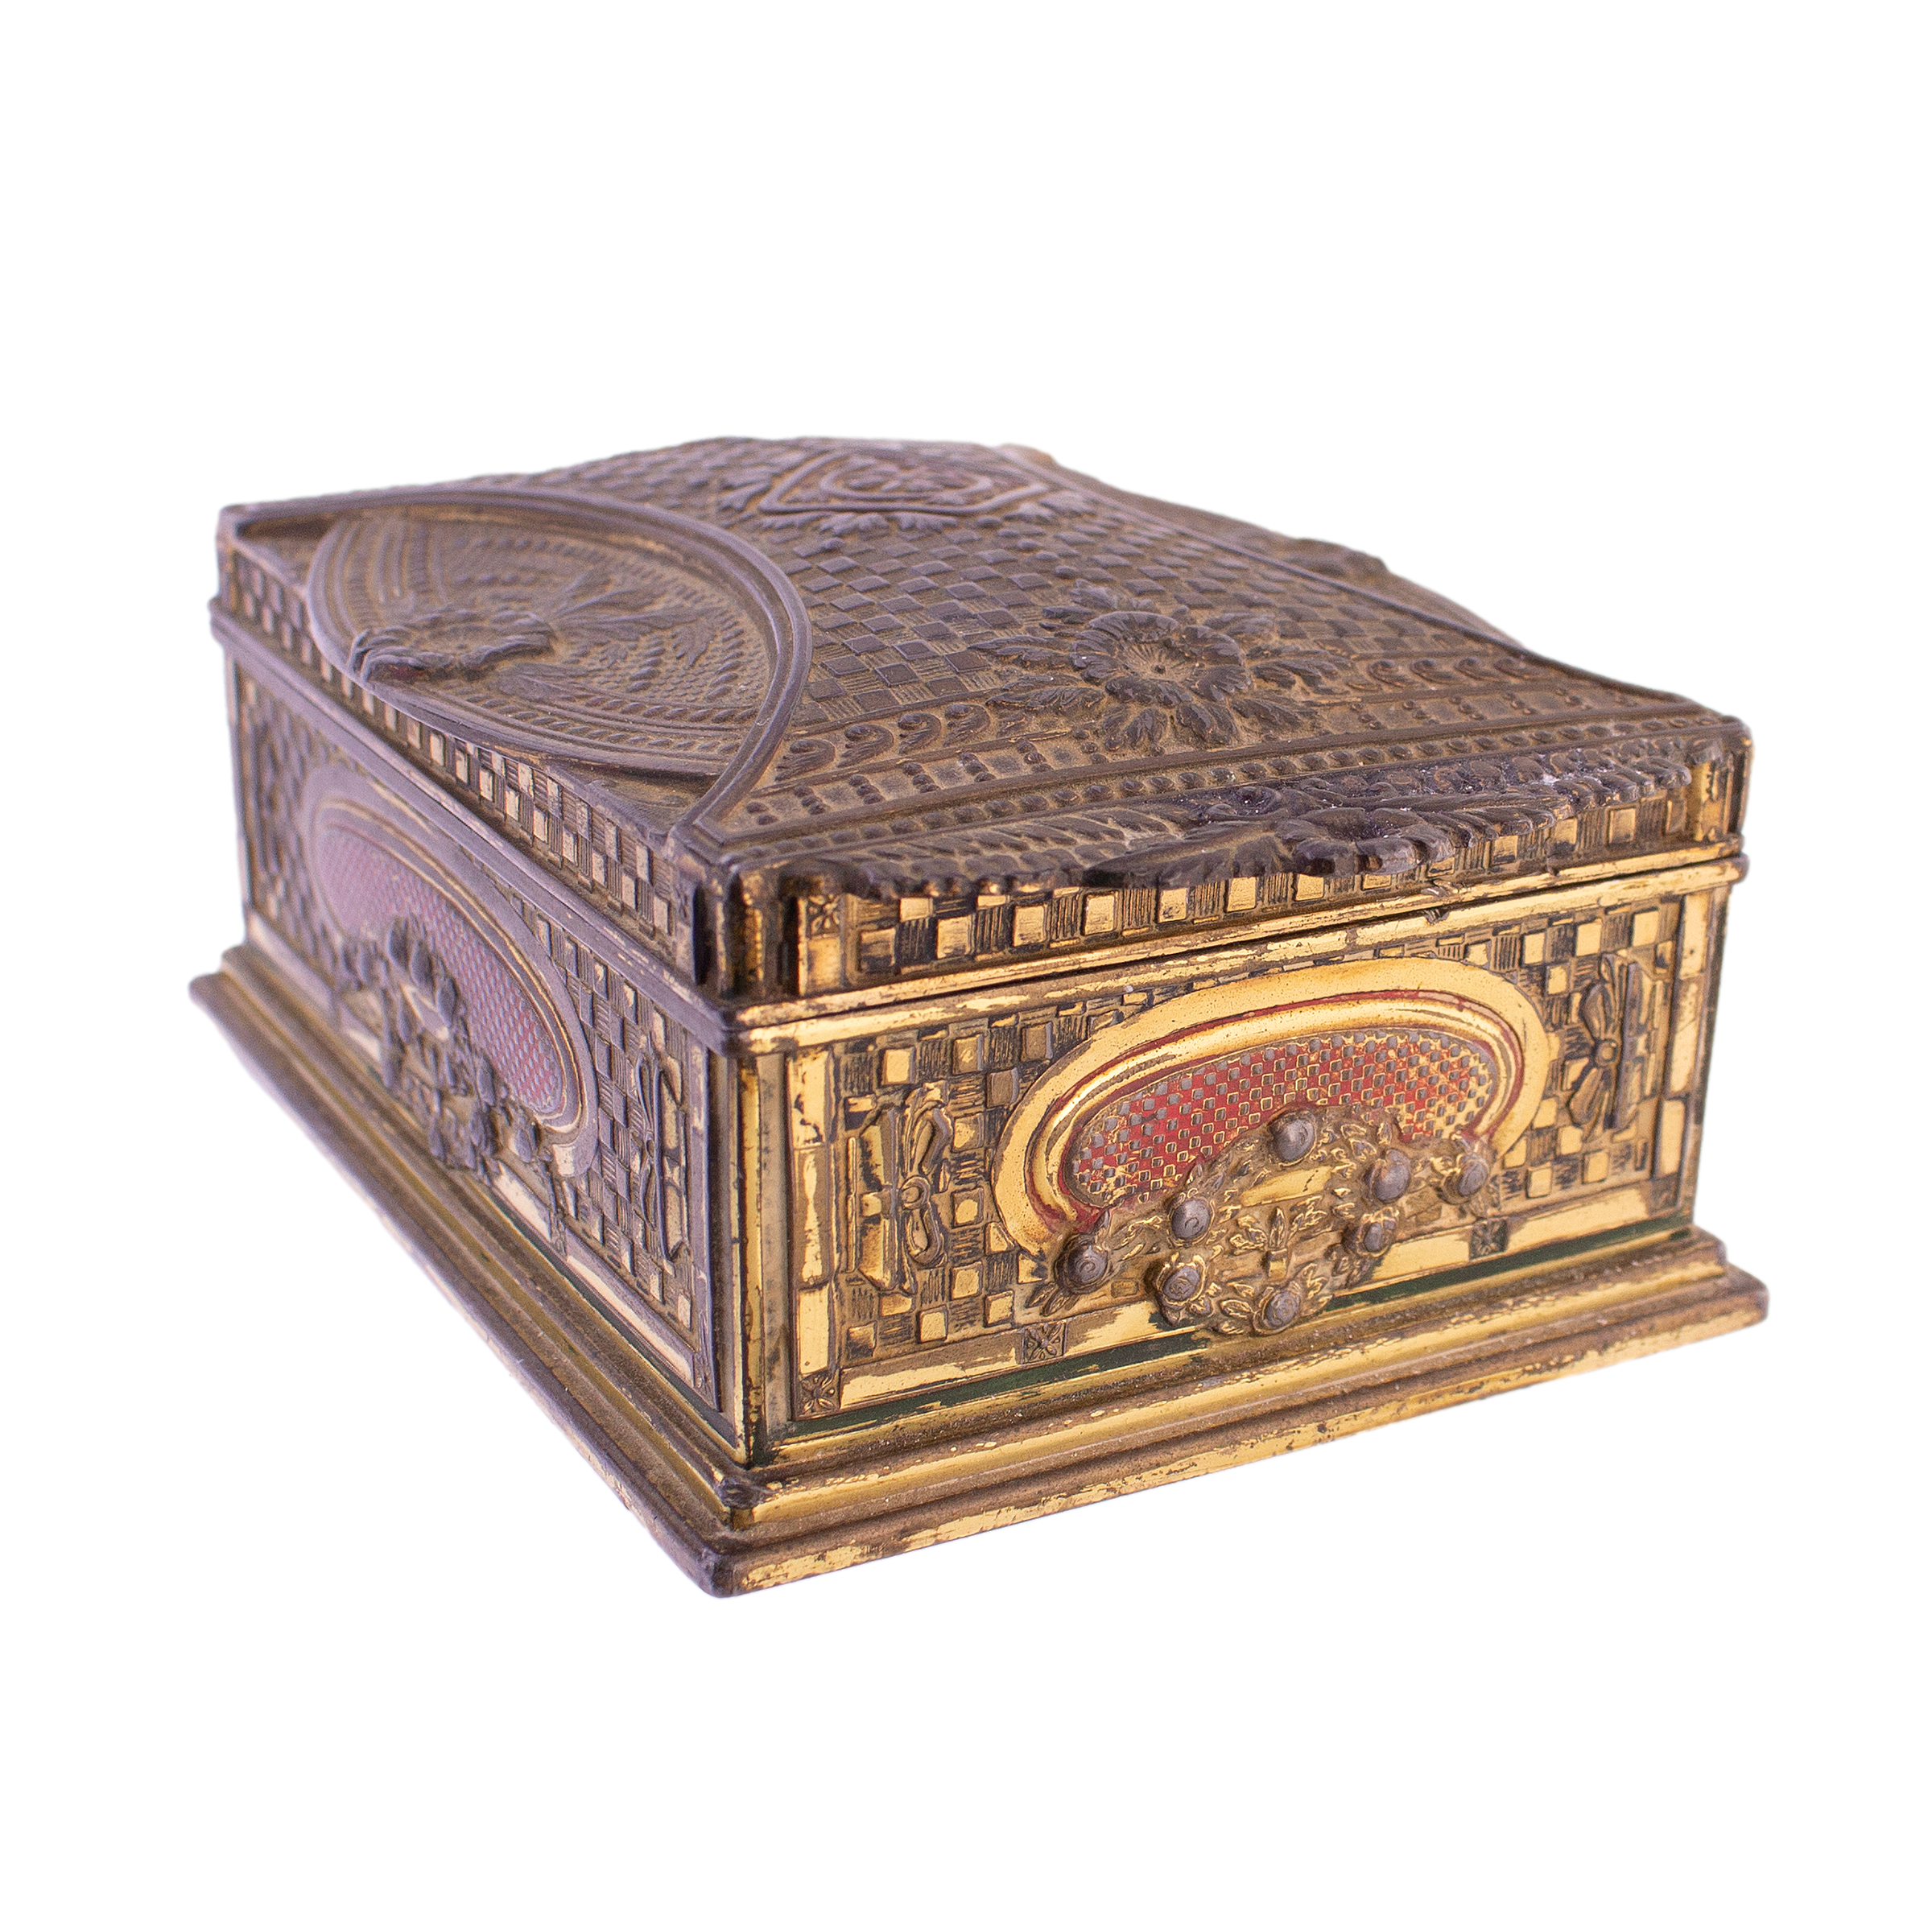 Antique Decorative Box